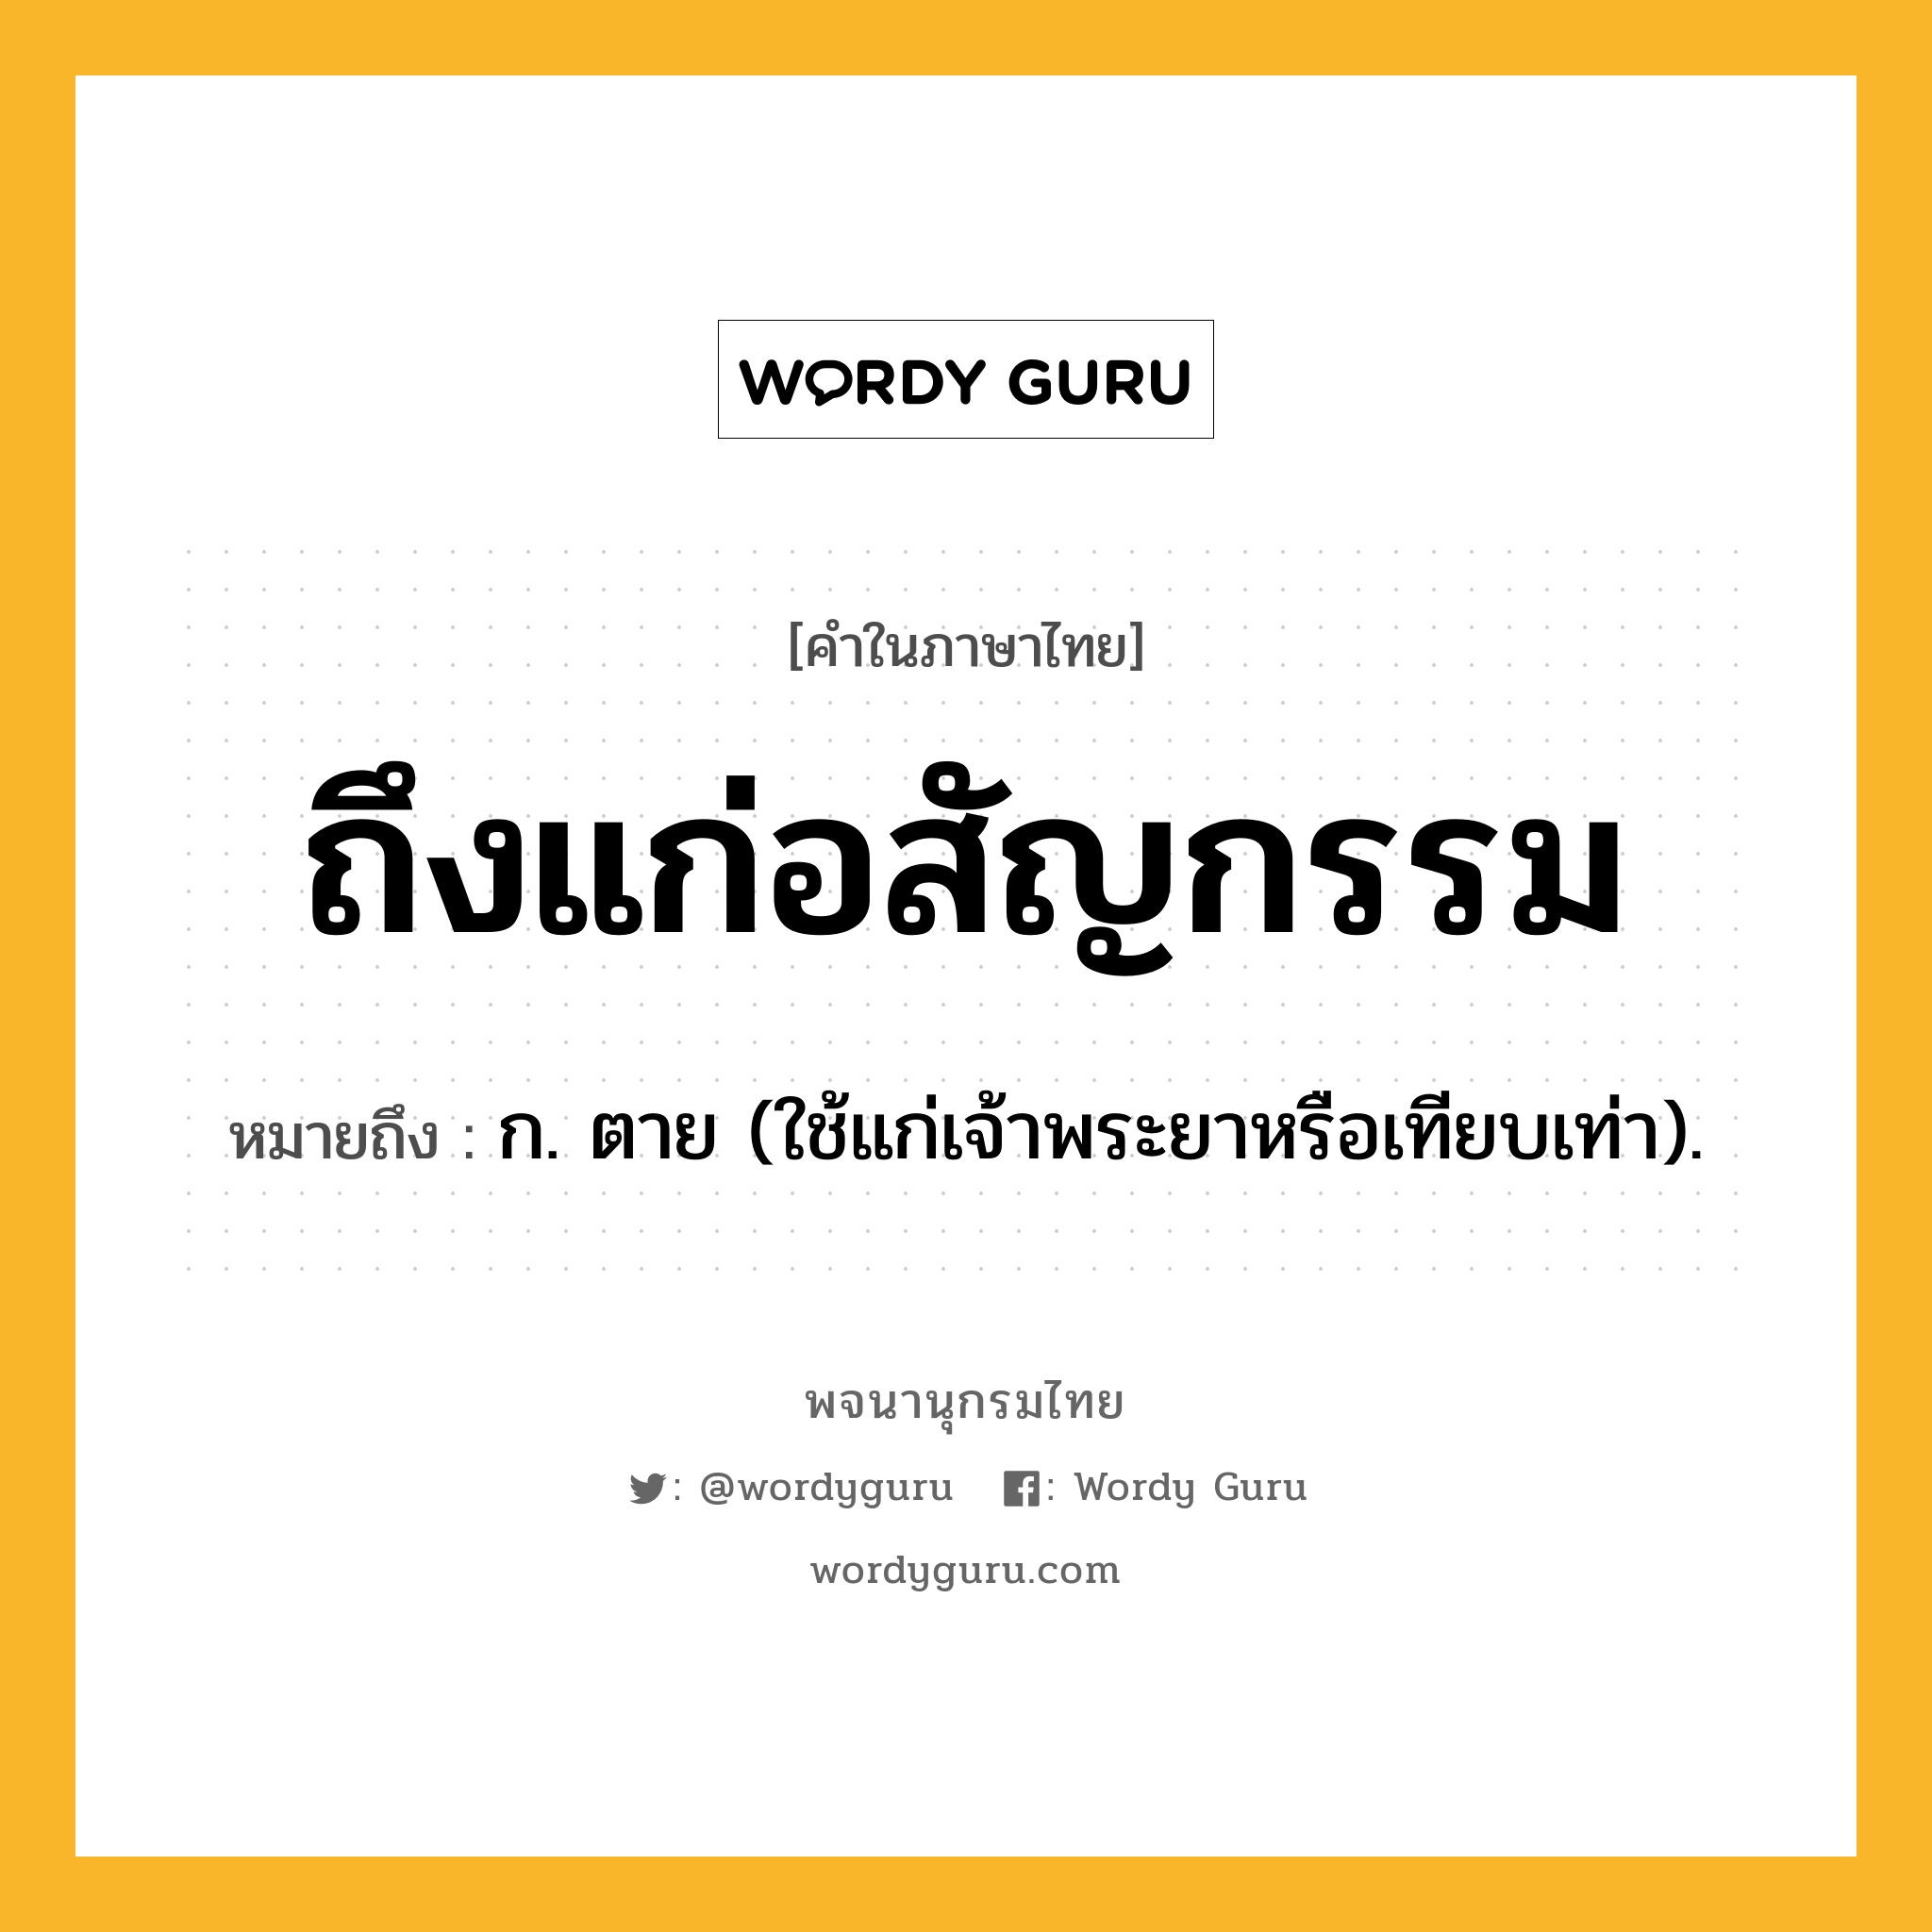 ถึงแก่อสัญกรรม ความหมาย หมายถึงอะไร?, คำในภาษาไทย ถึงแก่อสัญกรรม หมายถึง ก. ตาย (ใช้แก่เจ้าพระยาหรือเทียบเท่า).